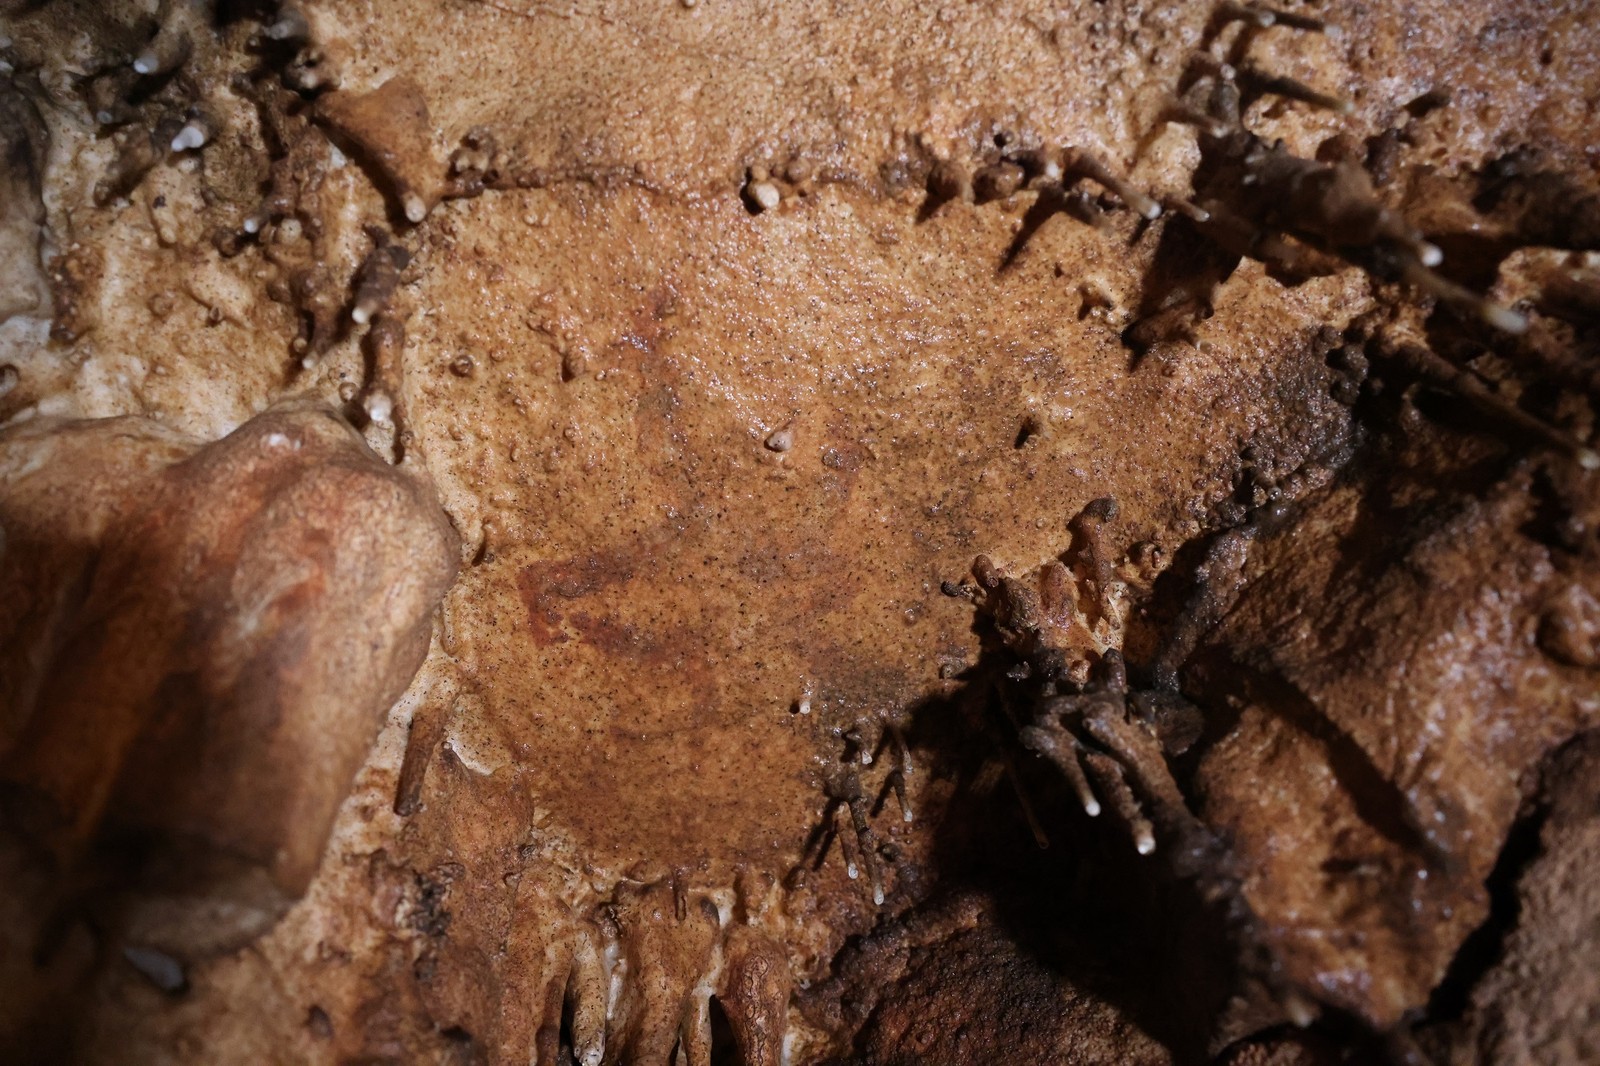 Cabeça de auque pintada – primeira figura animal descoberta em Cova Dones, confirmando a existência de arte rupestre paleolítica no local — Foto: Ruiz-Redondo/Barciela/Martorell